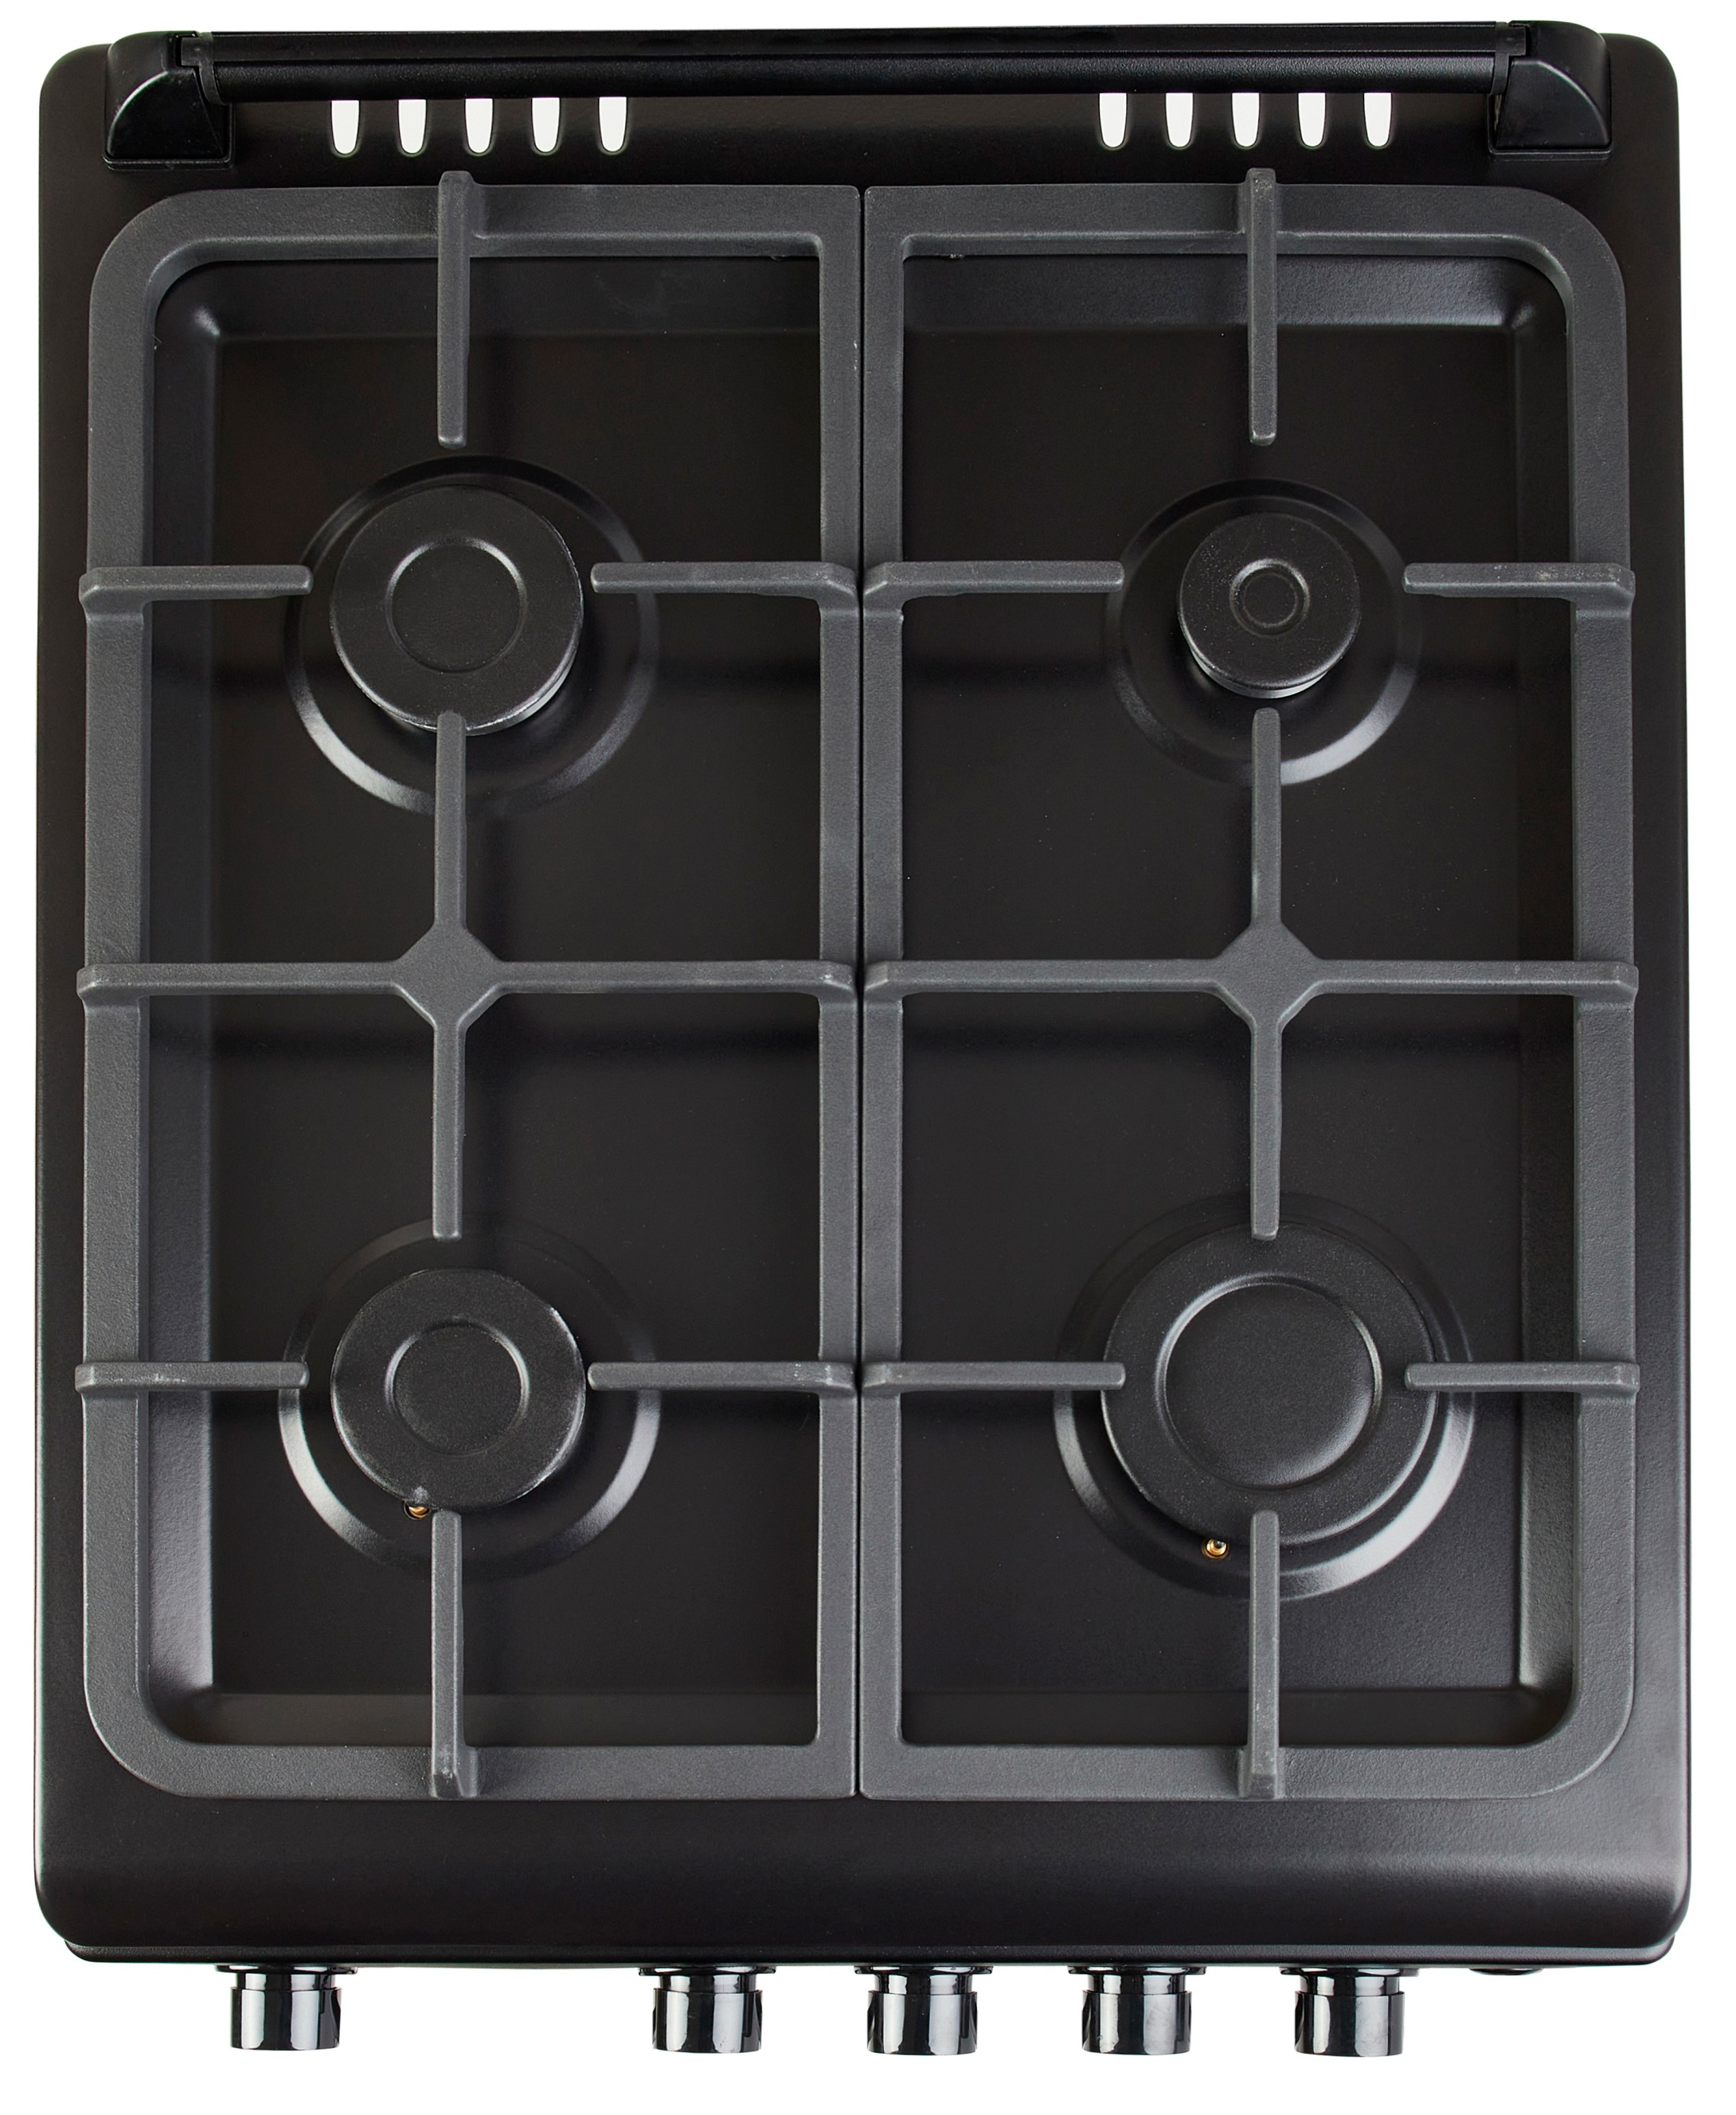 Кухонная плита Fiesta G 5403 SACDcG-BL инструкция - изображение 6